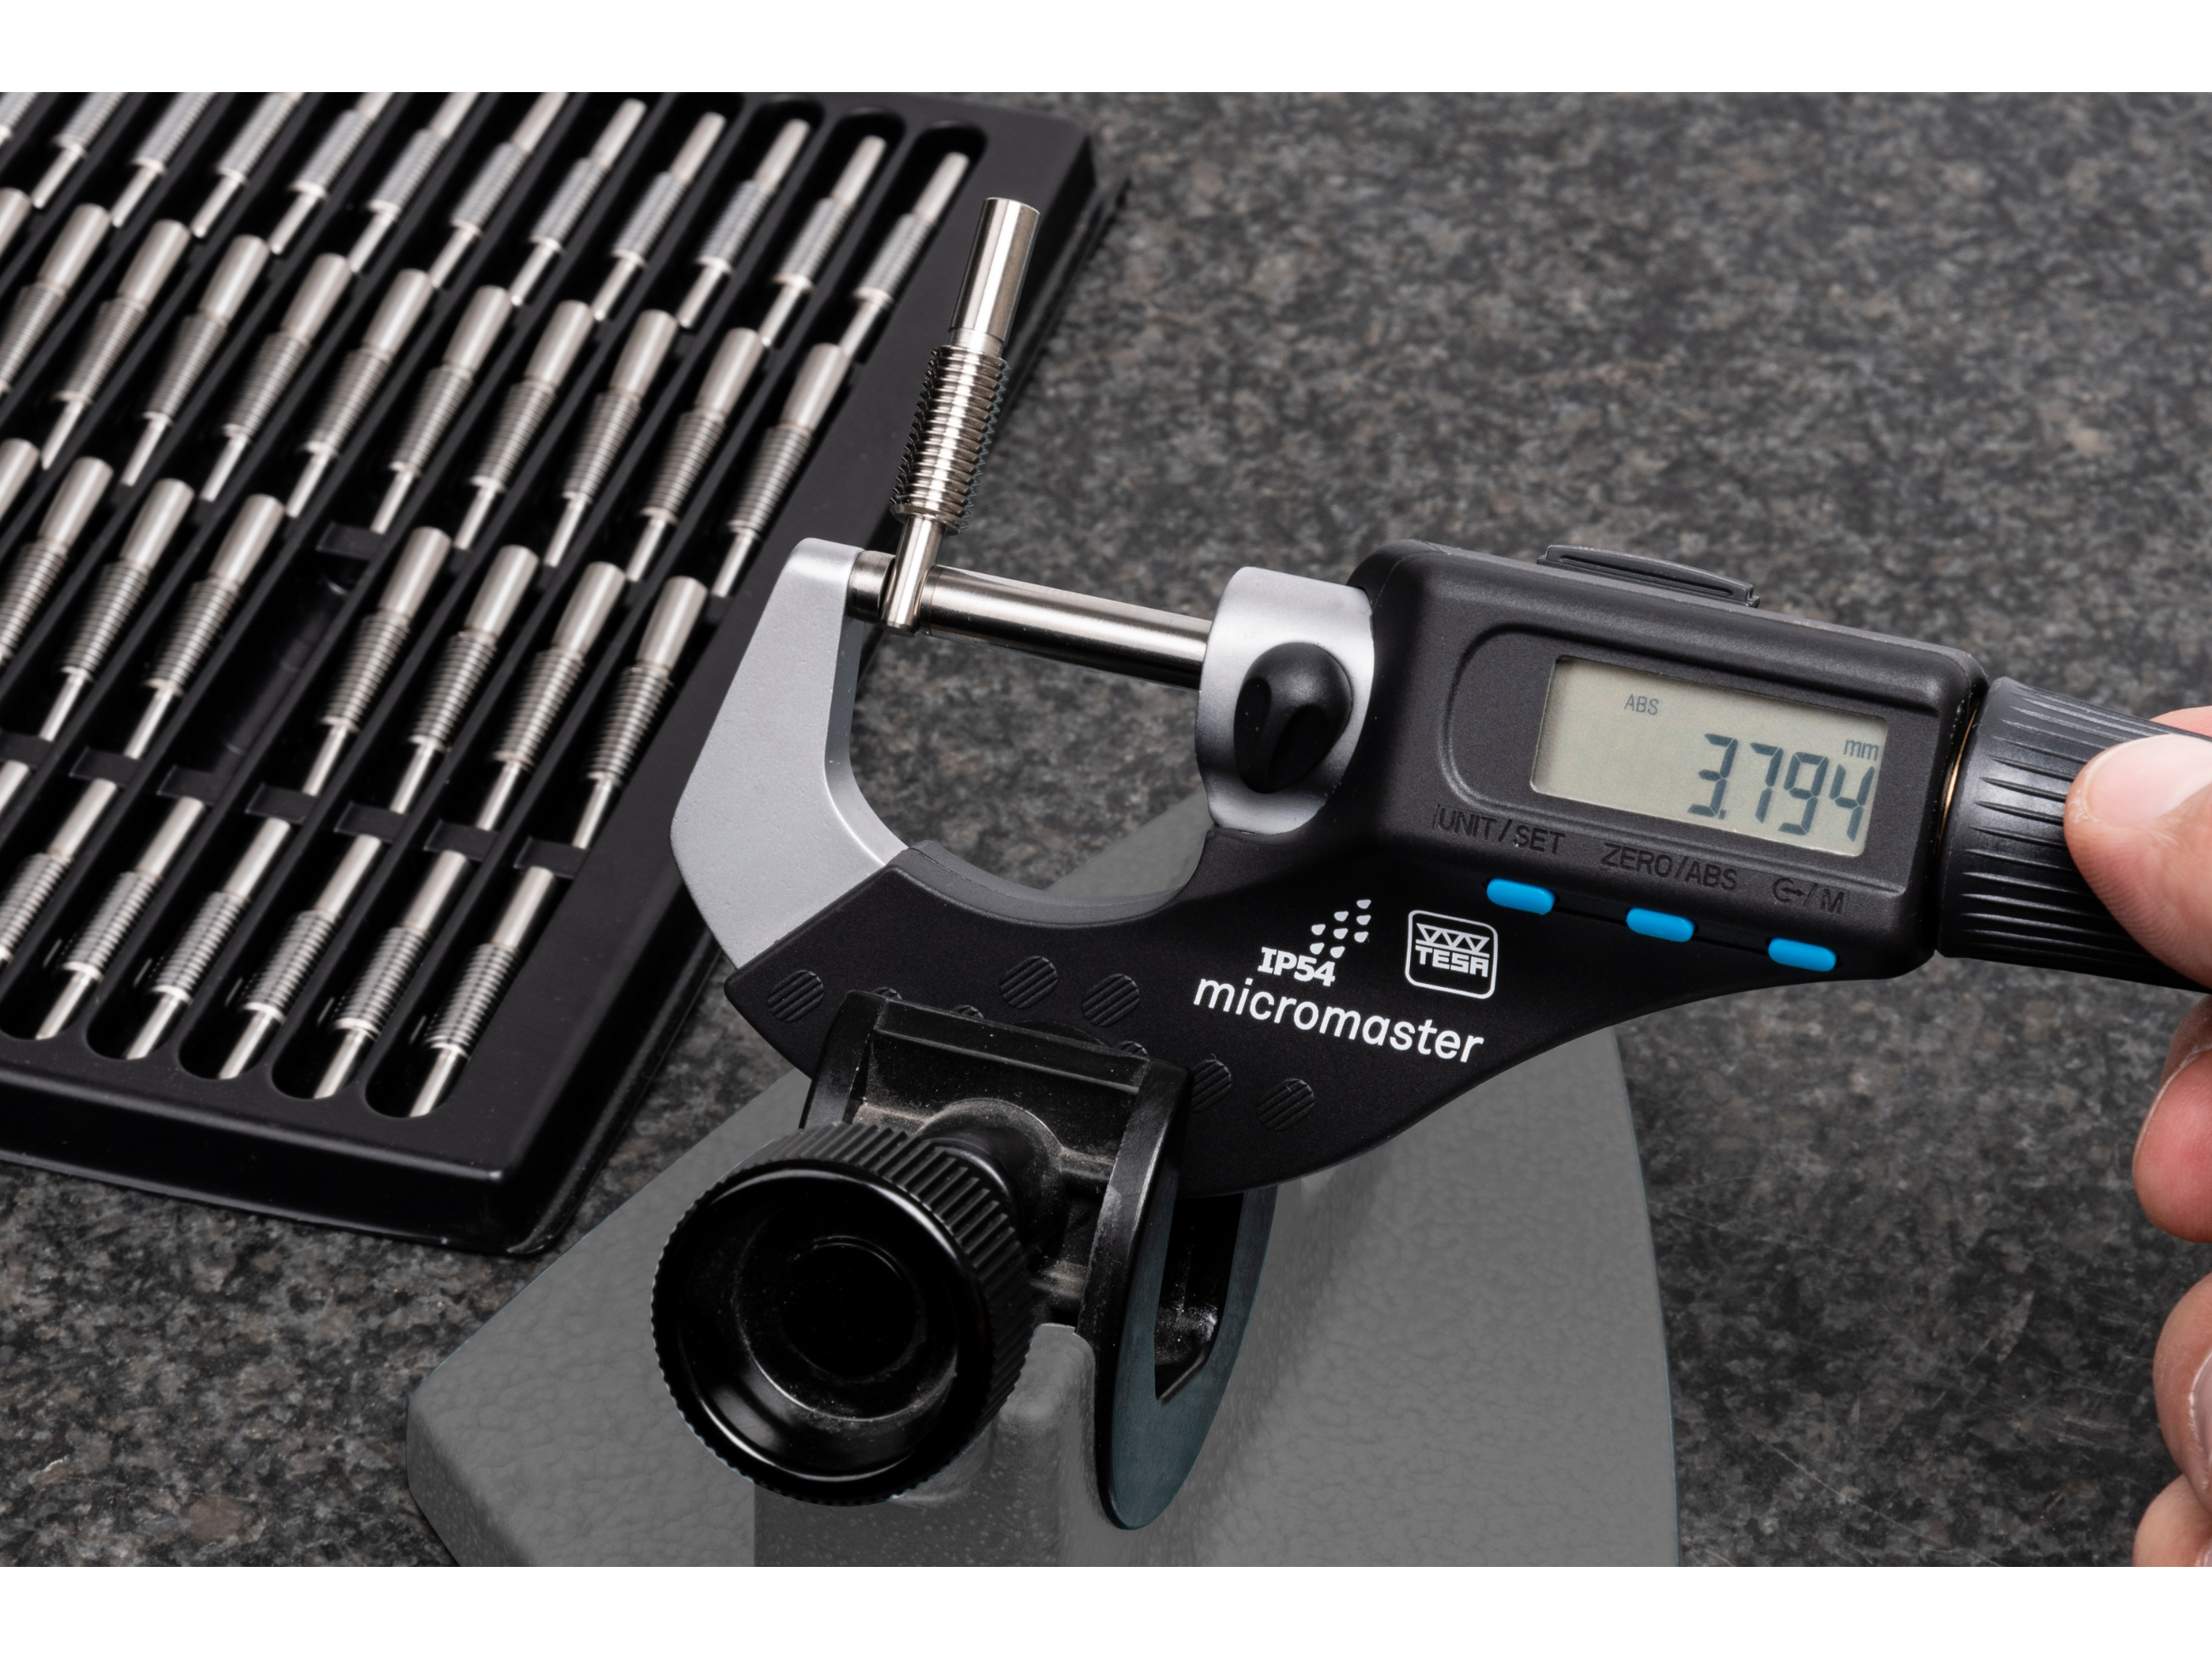 Tesa Micromaster Digital Micrometer